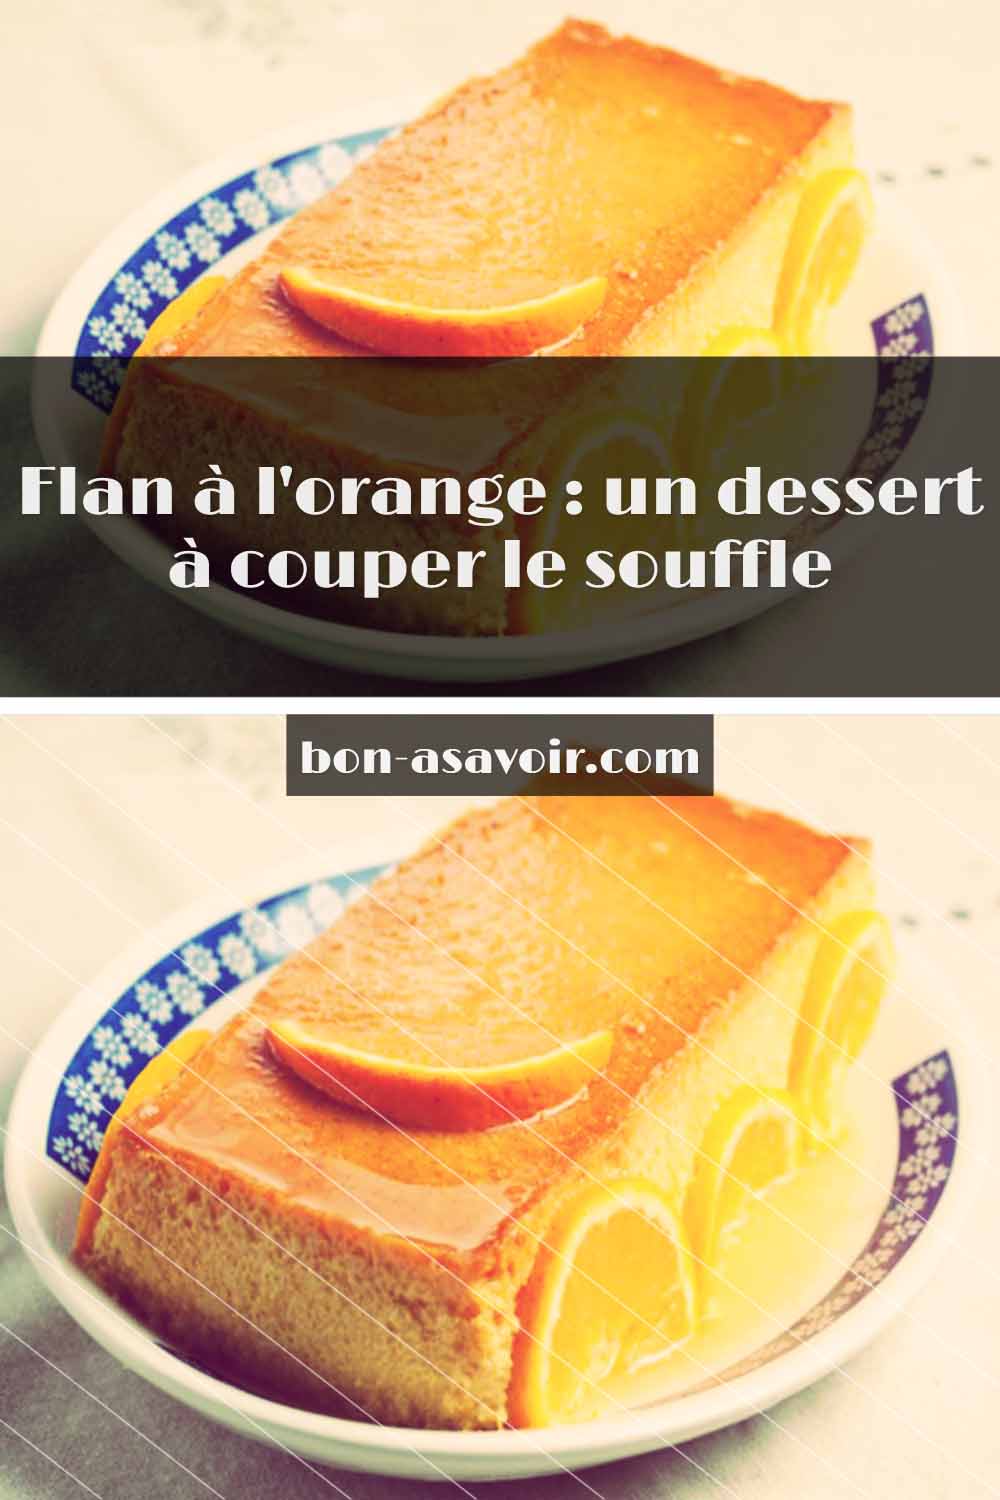 Flan à l'orange : un dessert à couper le souffle